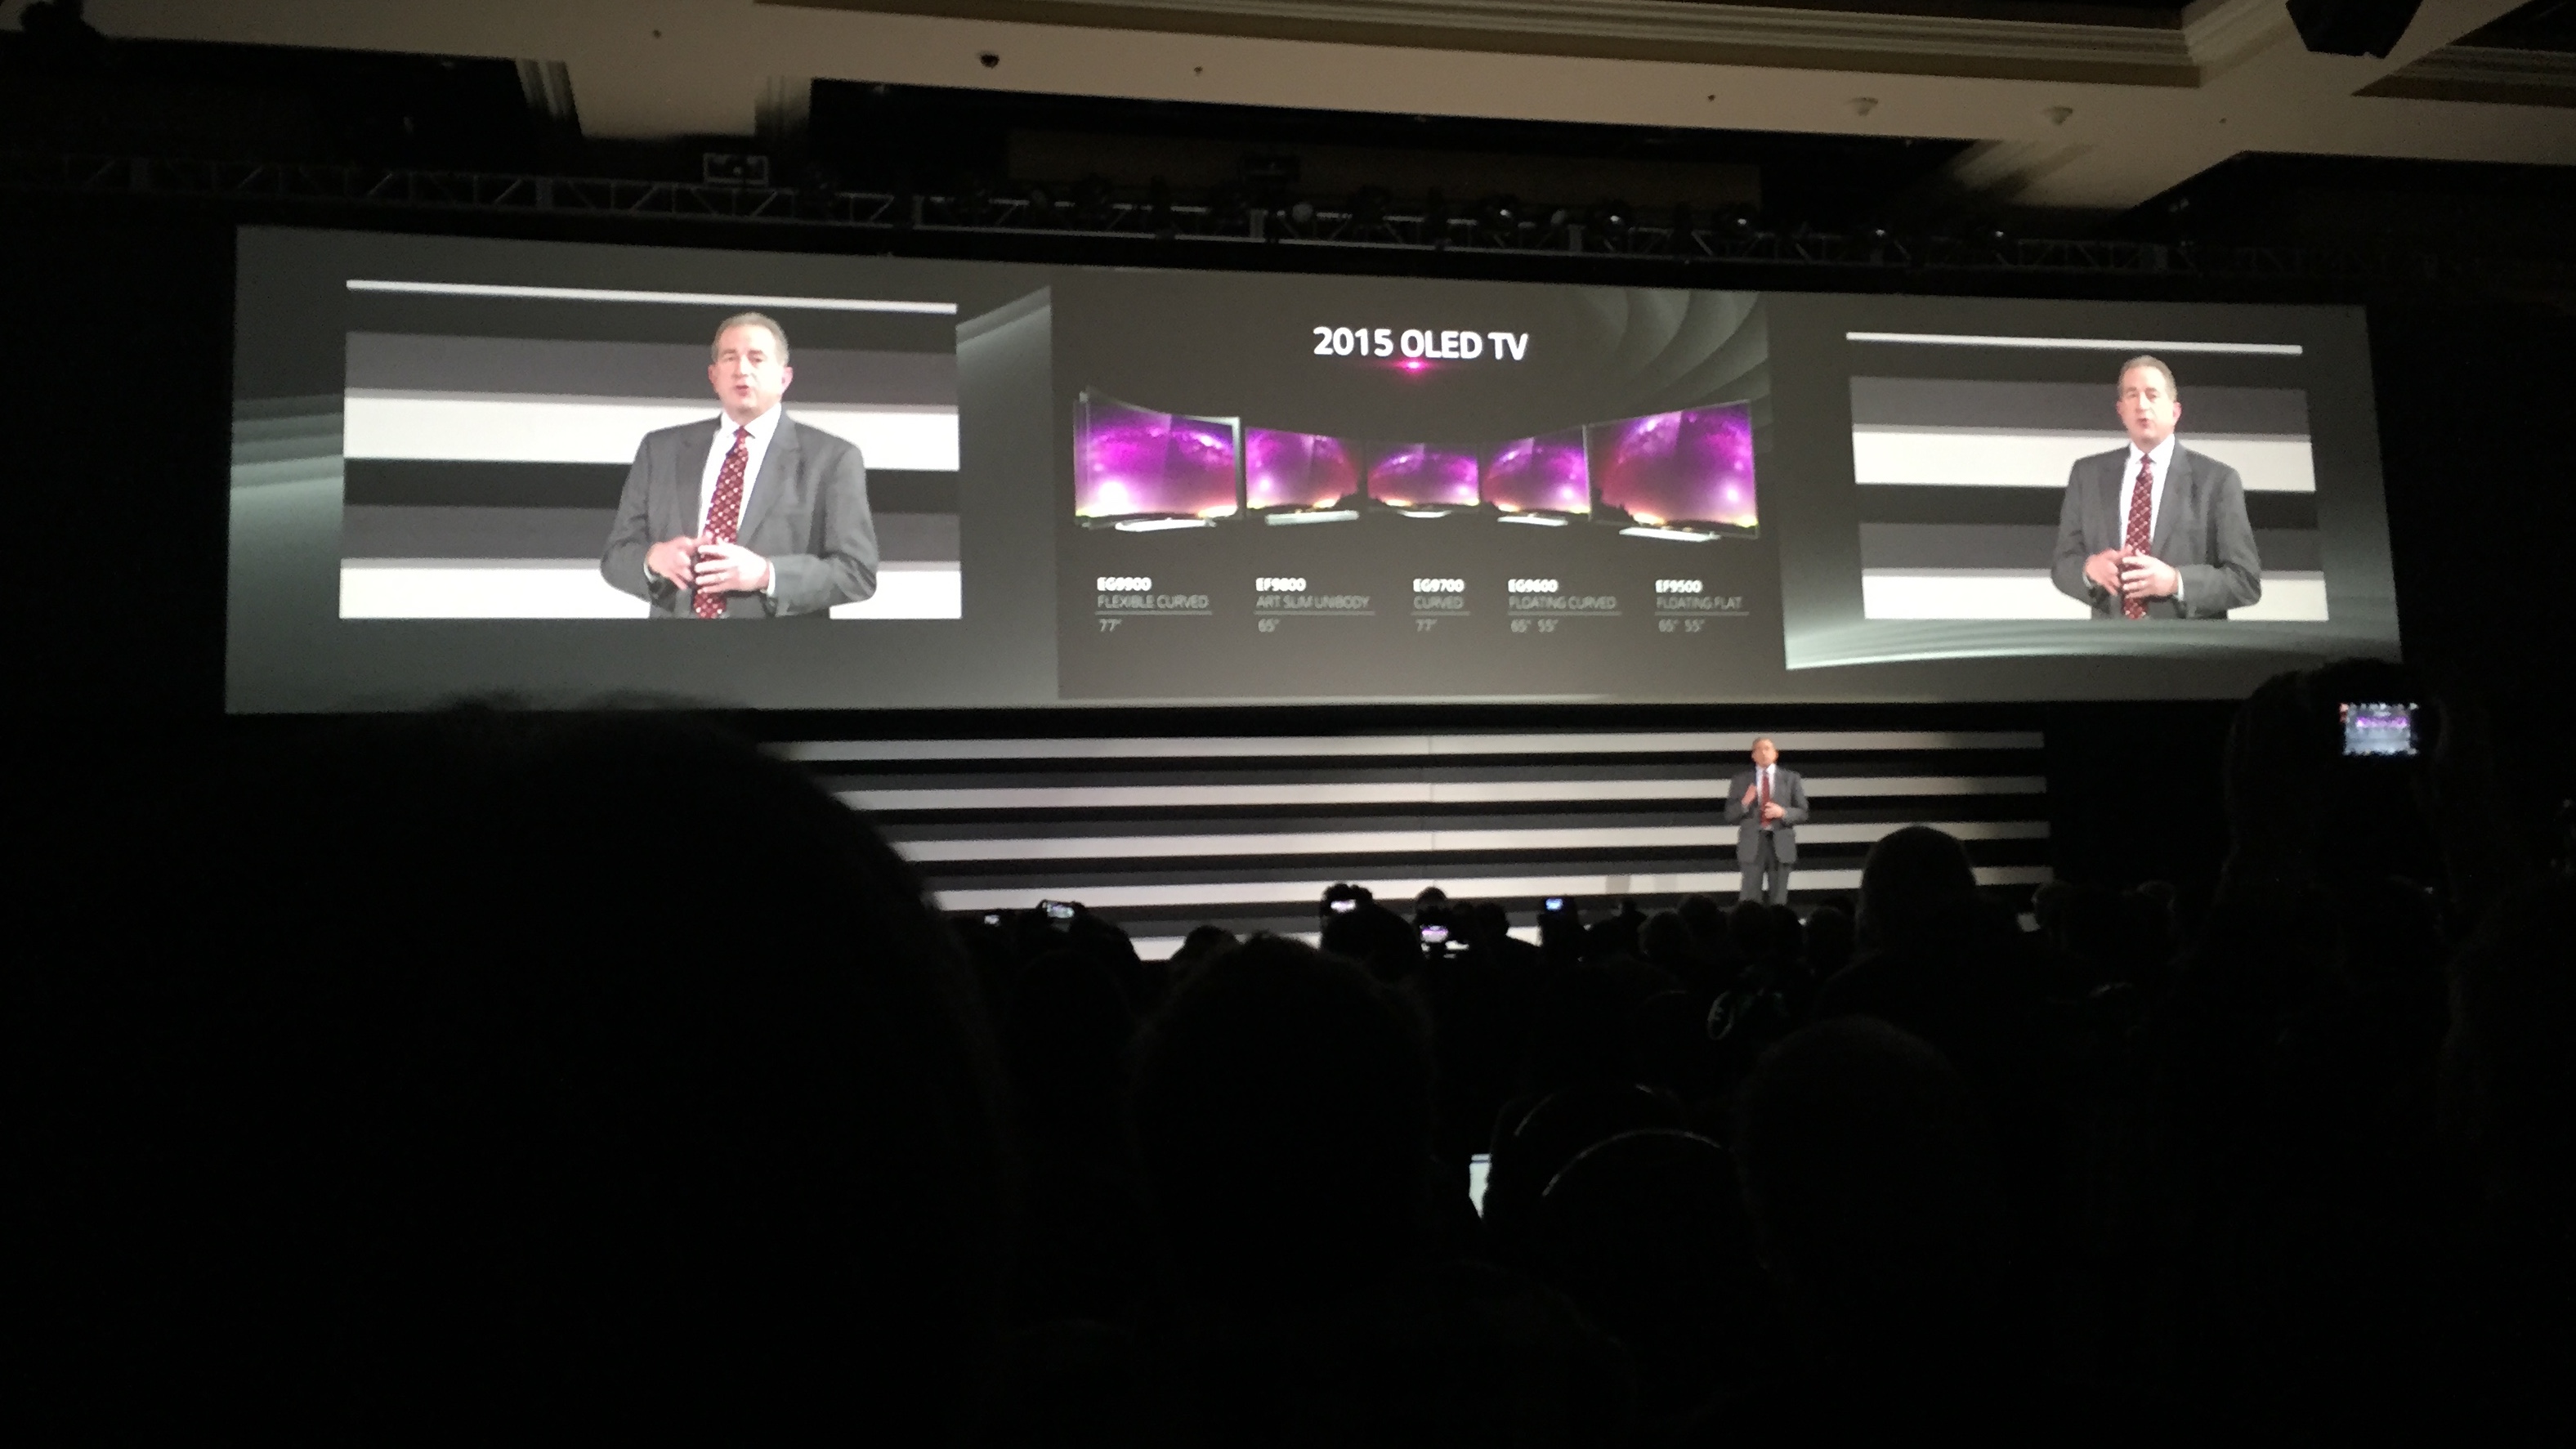 LG bertaruh besar pada OLED, mengungkapkan 7 TV OLED 4K baru untuk tahun 2015